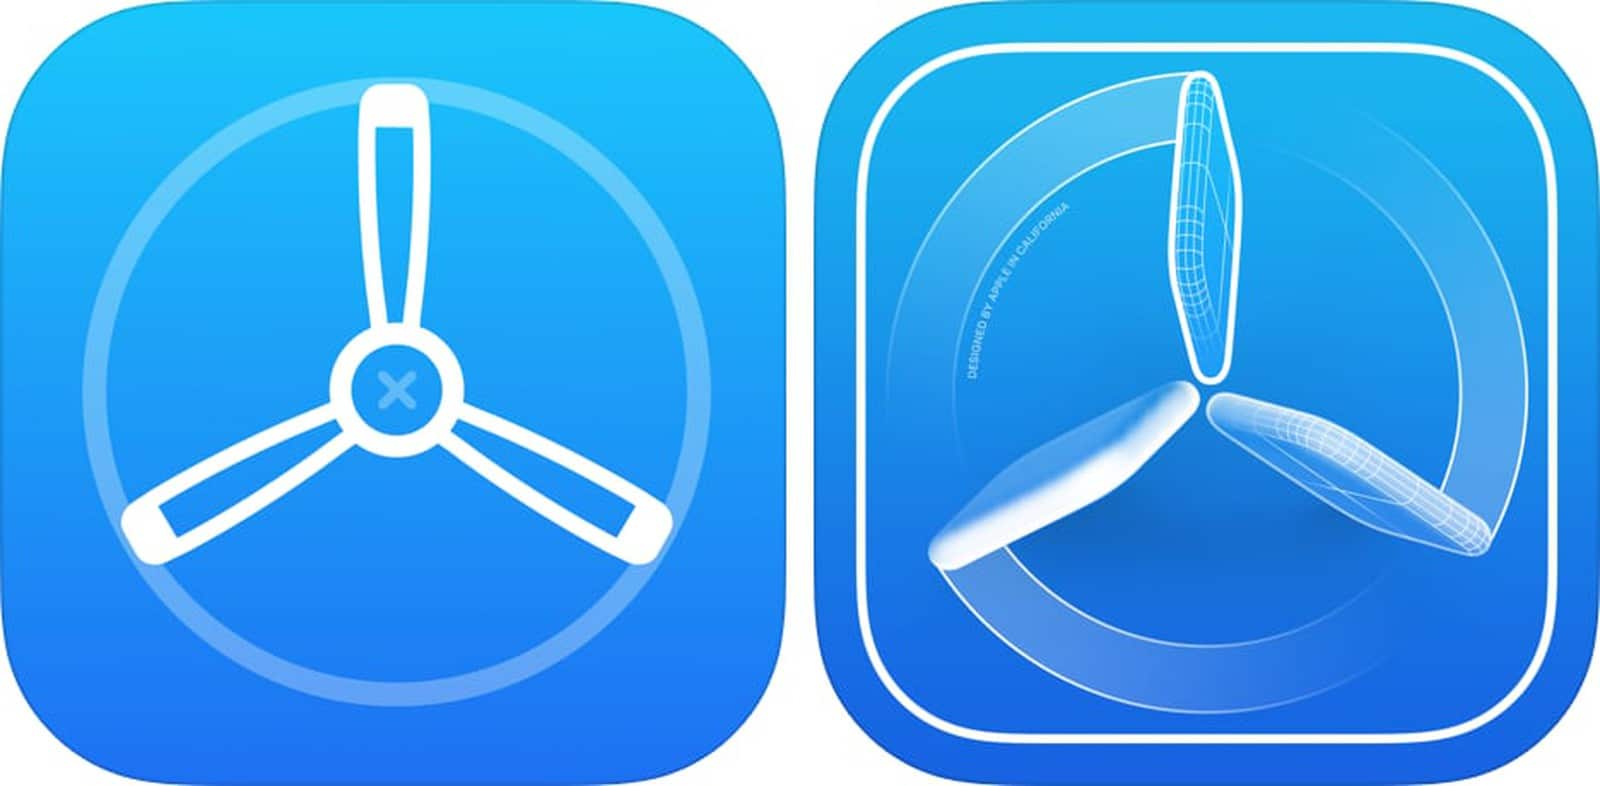 Ícones antigo (à esquerda) e novo (à direita) do app TestFlight, da Apple